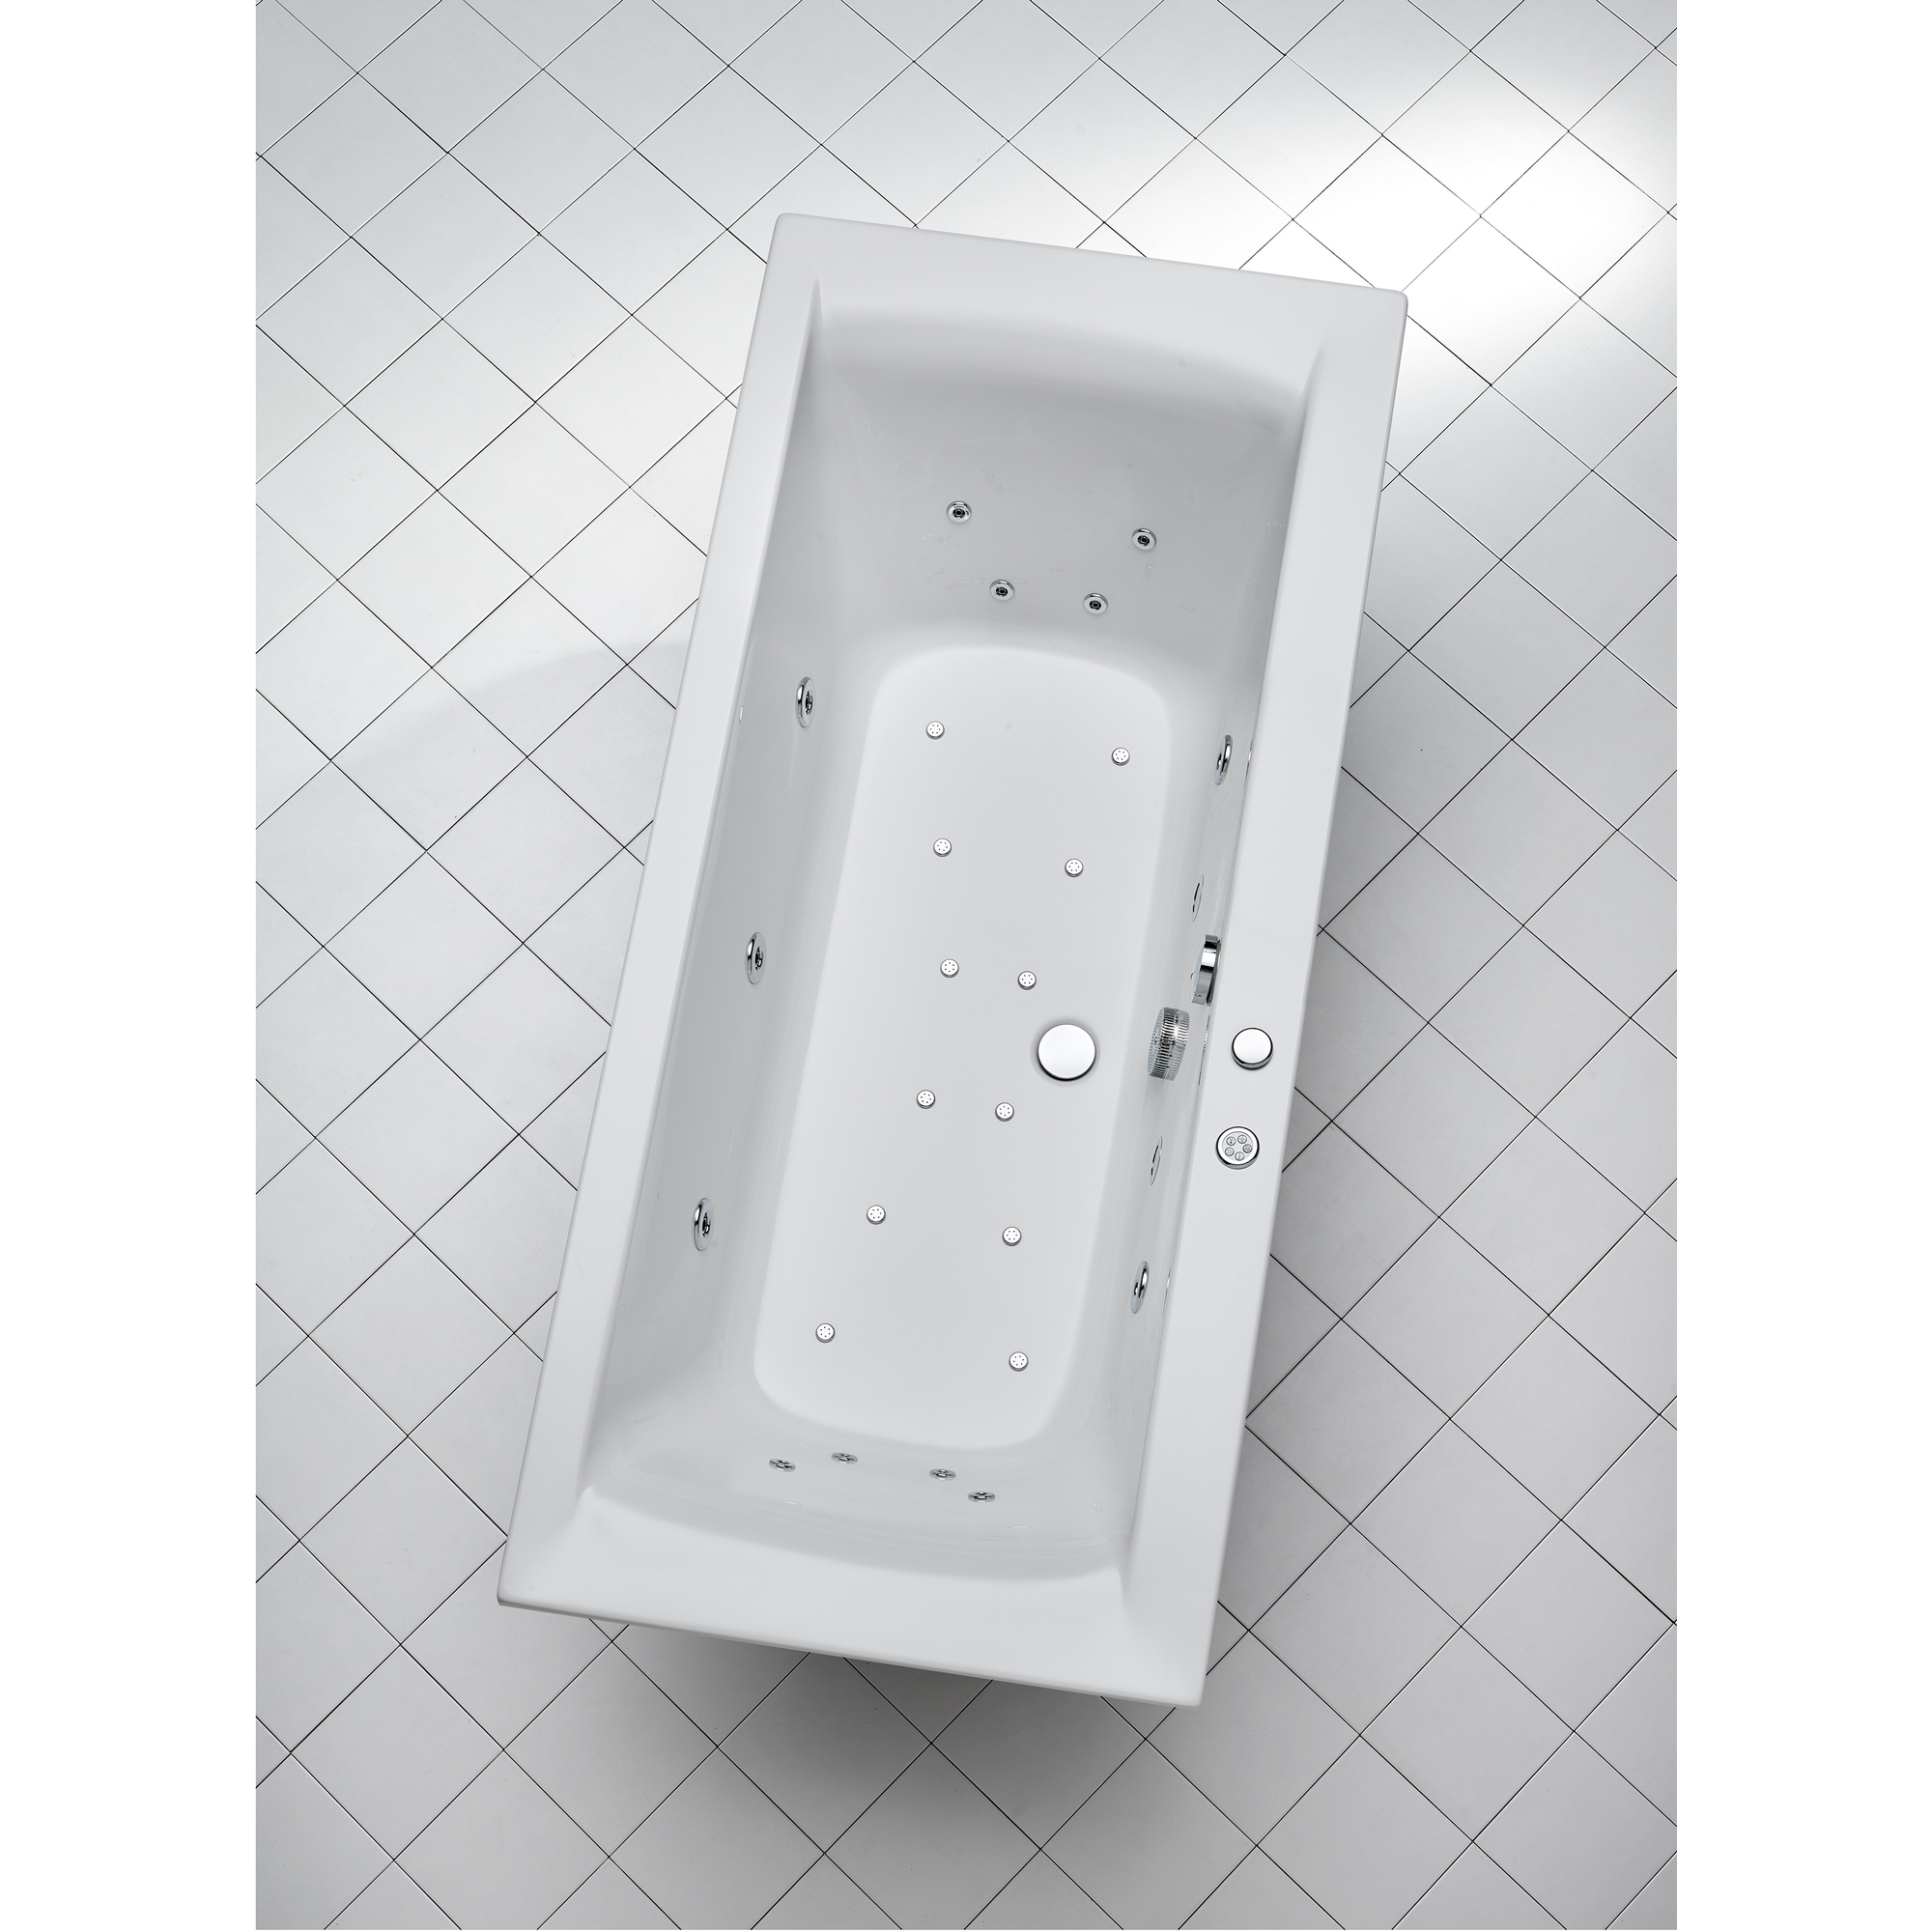 Whirlpool-Komplettset 'Rosa' Sanitäracryl weiß 180 x 80 x 45 cm + product picture